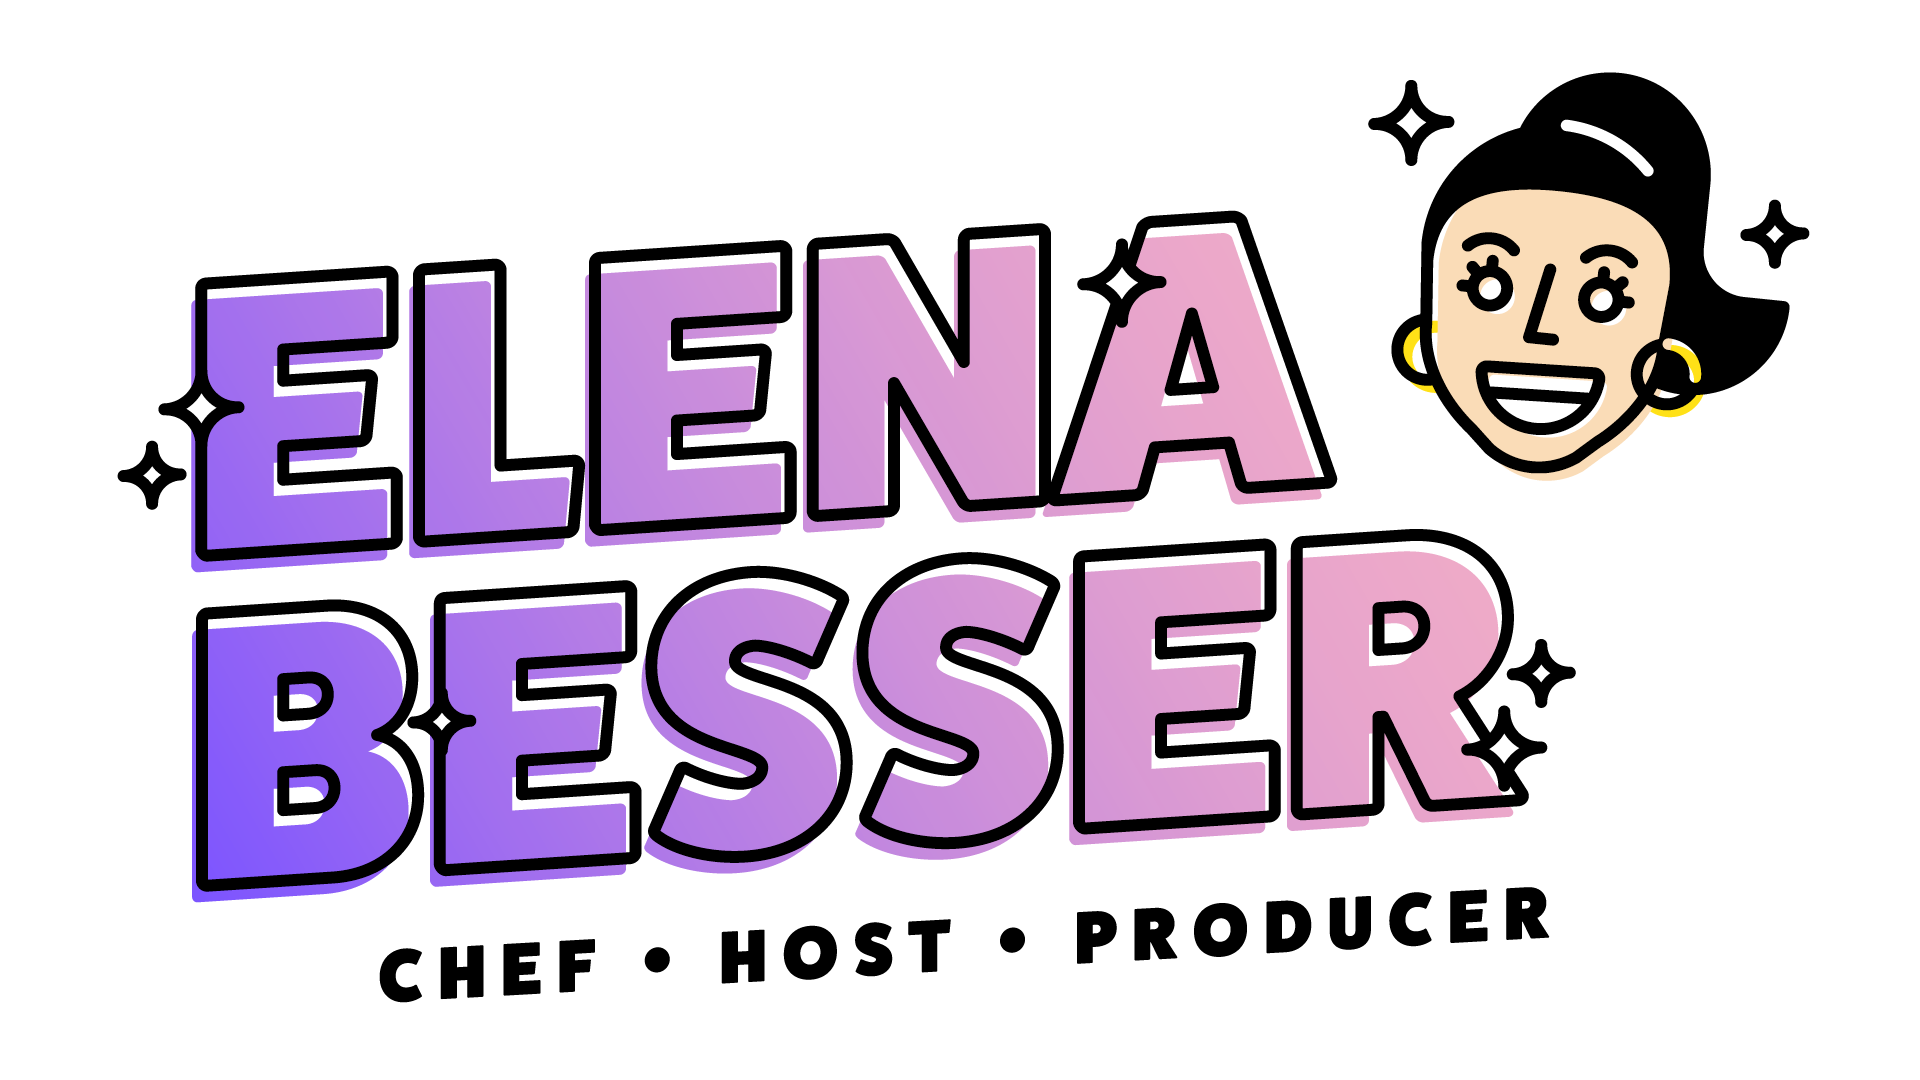 ELENA BESSER